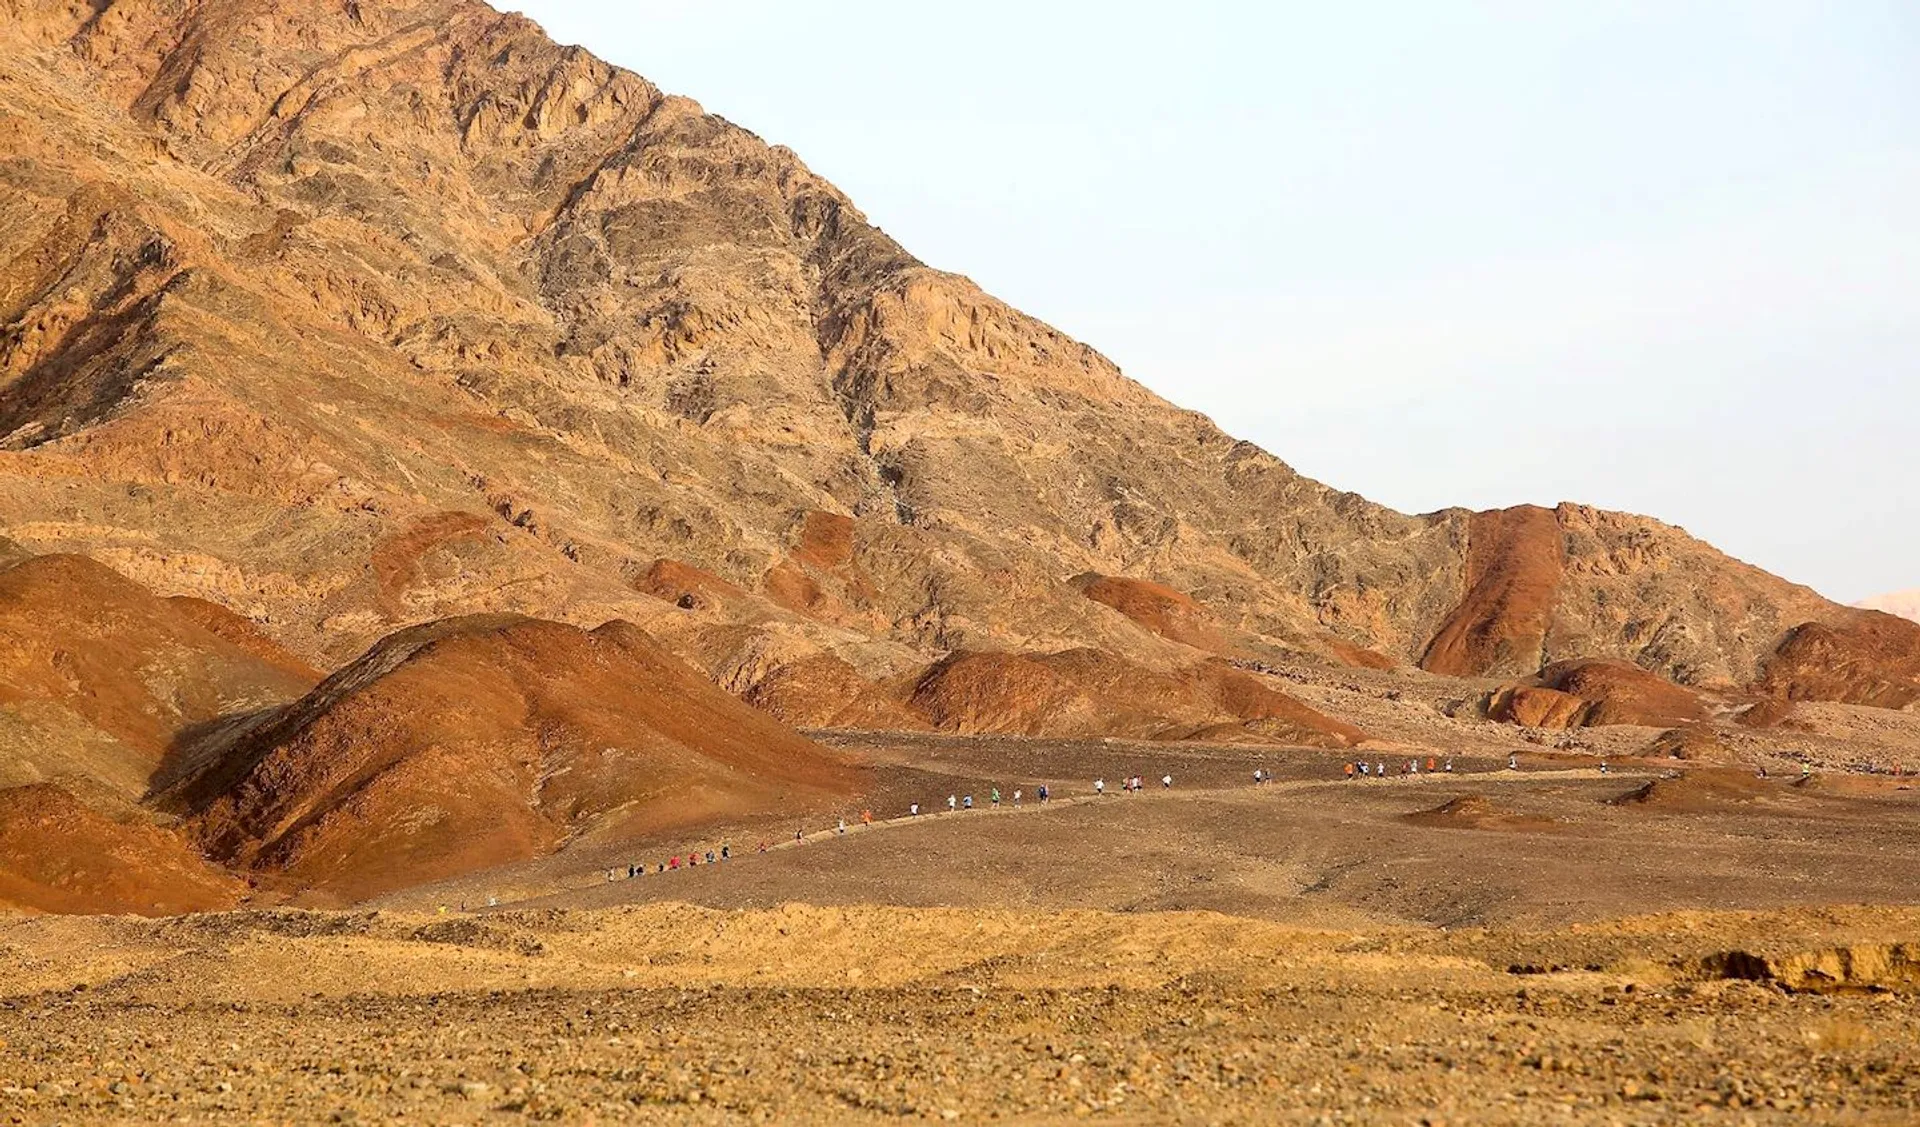 Eilat Desert Marathon